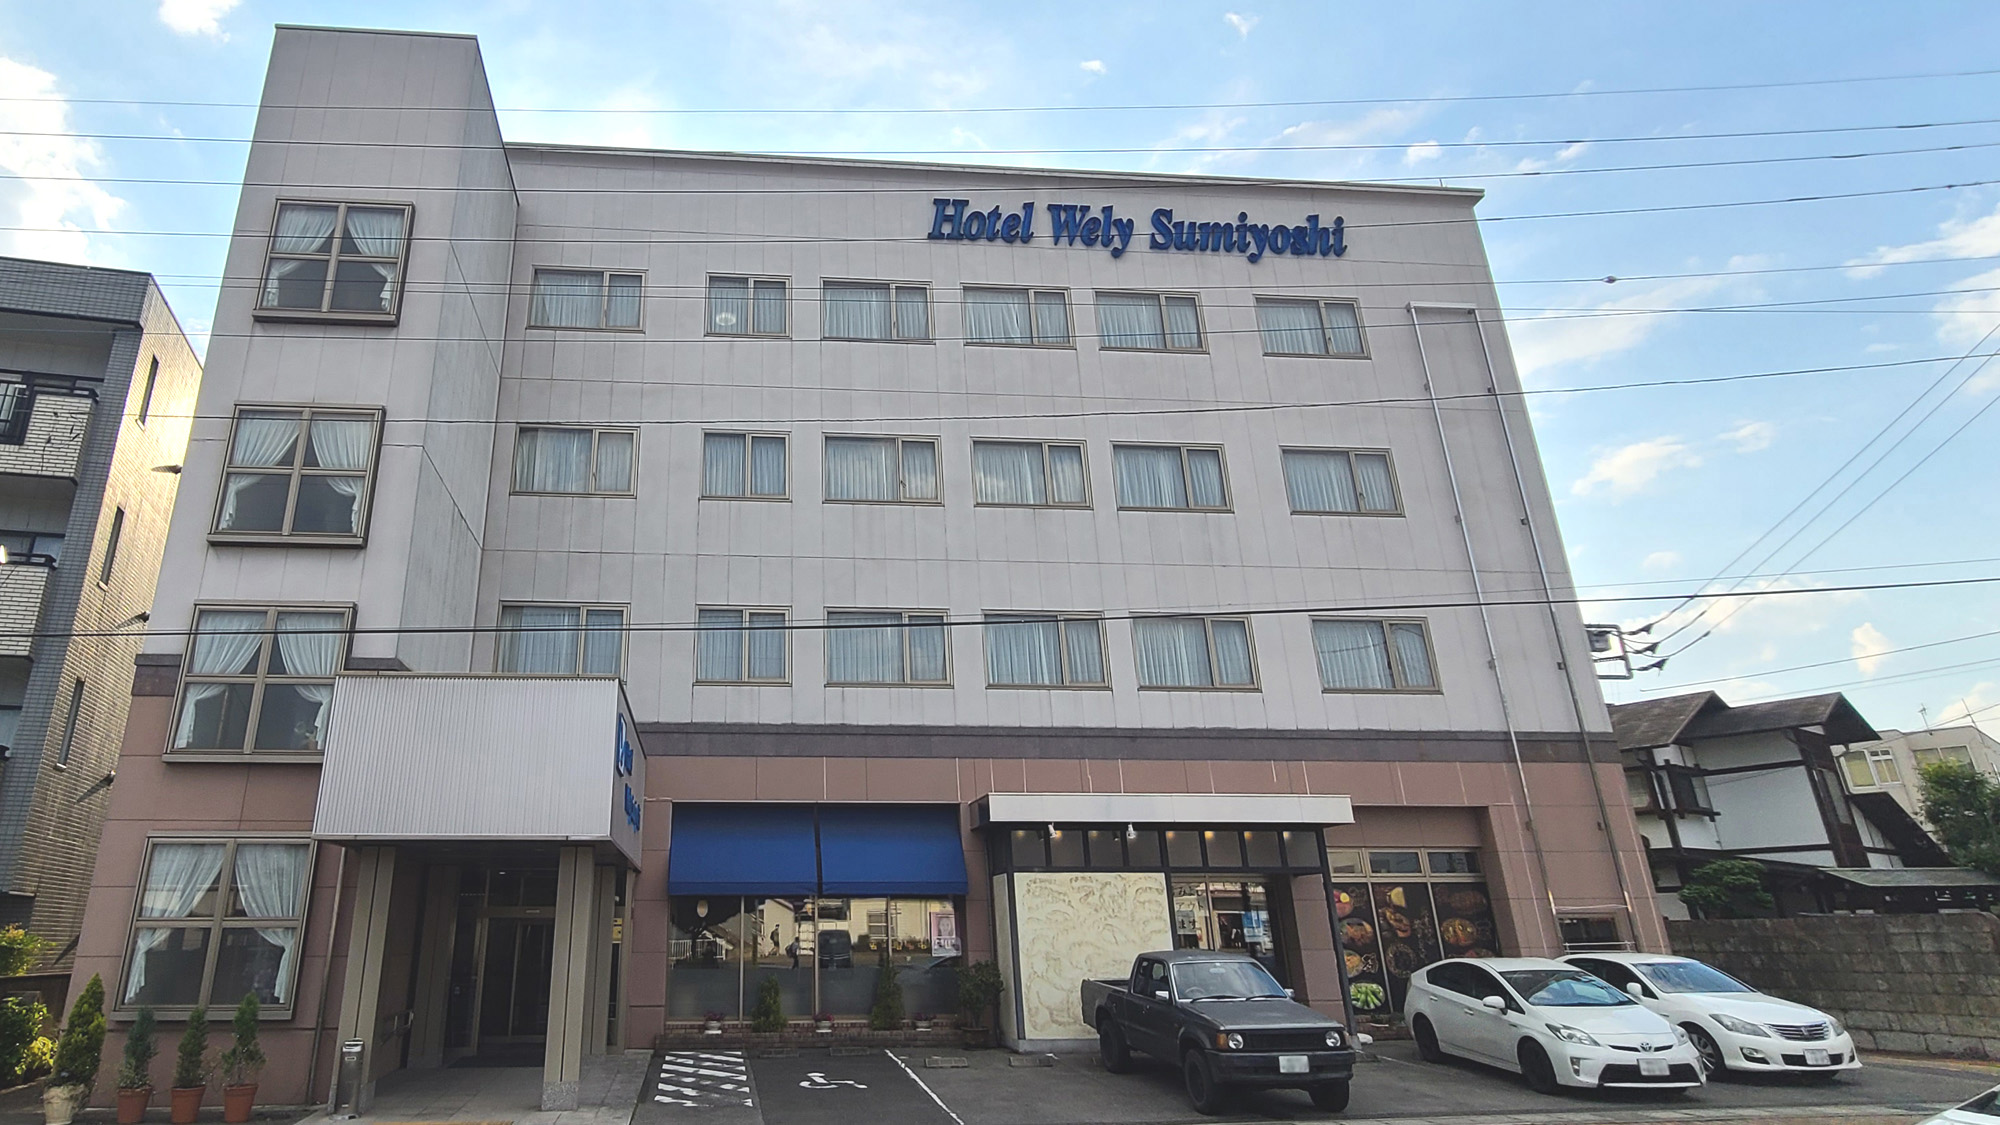 Hotel Wely Sumiyoshi